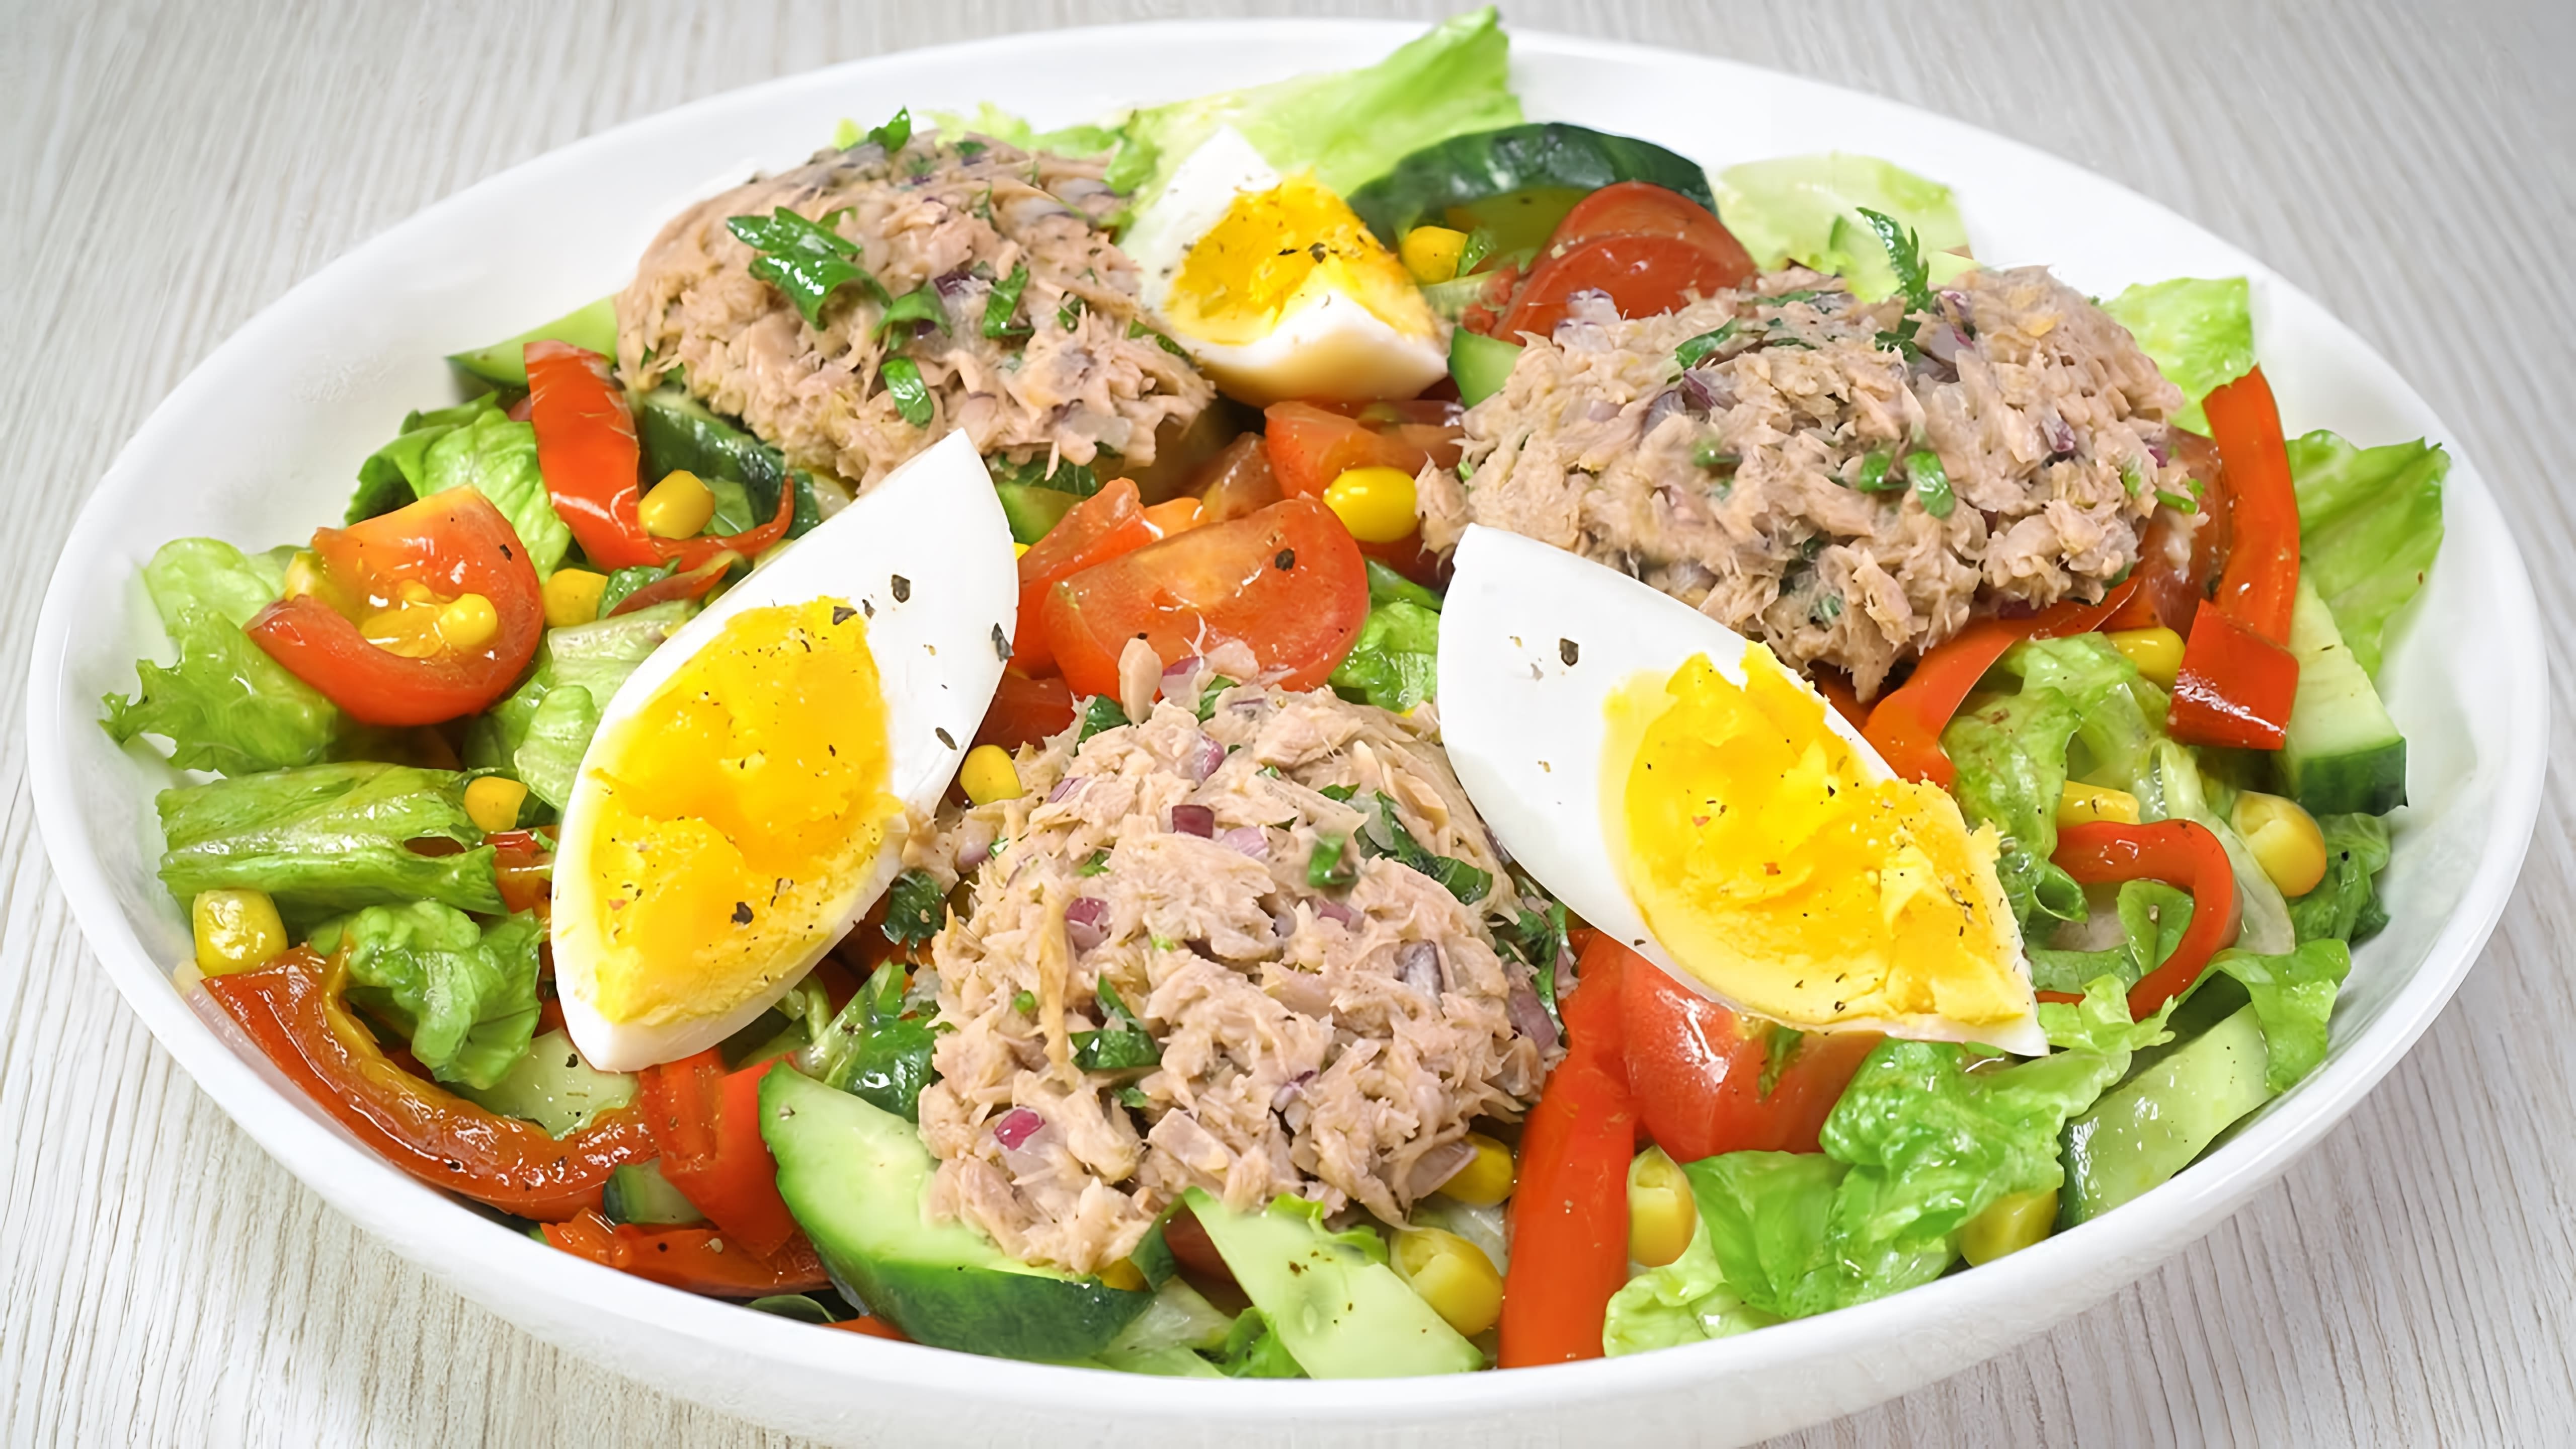 В этом видео демонстрируется рецепт салата с консервированным тунцом, который идеально подходит для летнего обеда